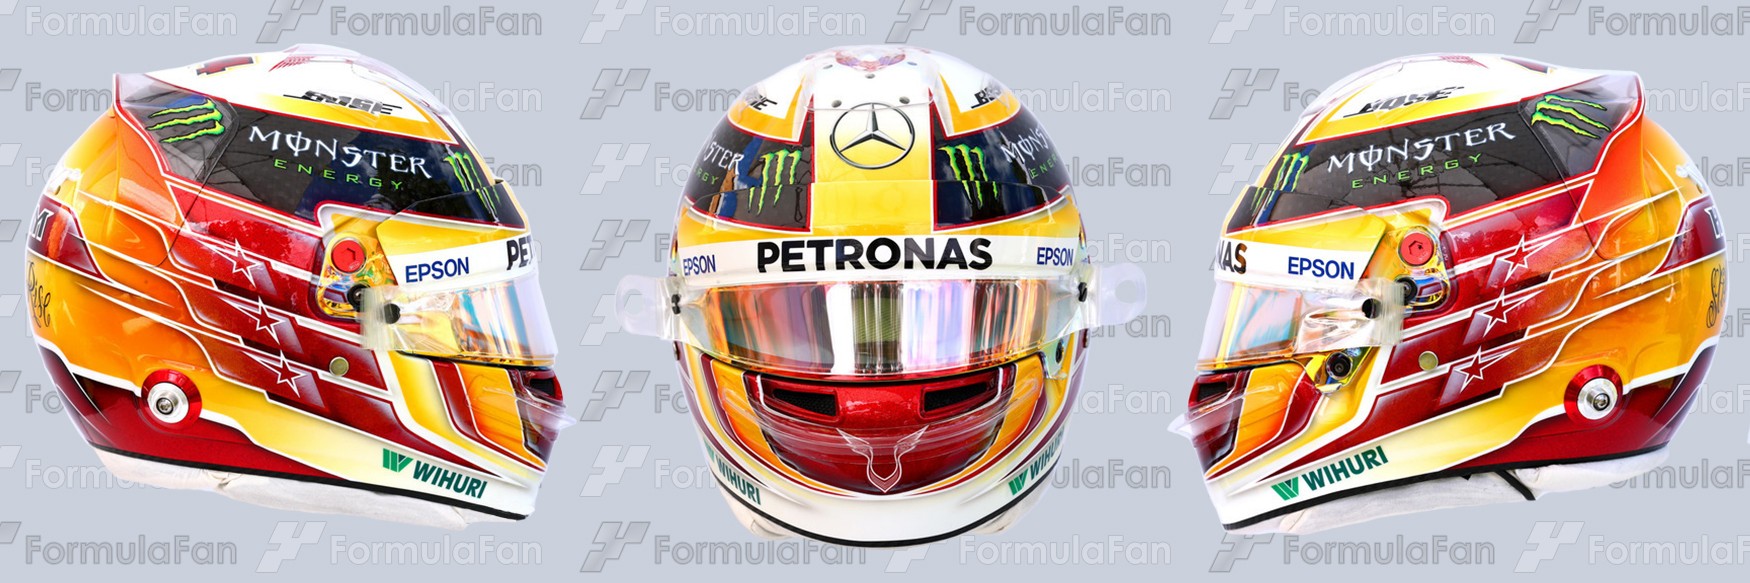 Шлем Льюиса Хэмилтона на сезон 2017 года | 2017 helmet of Lewis Hamilton